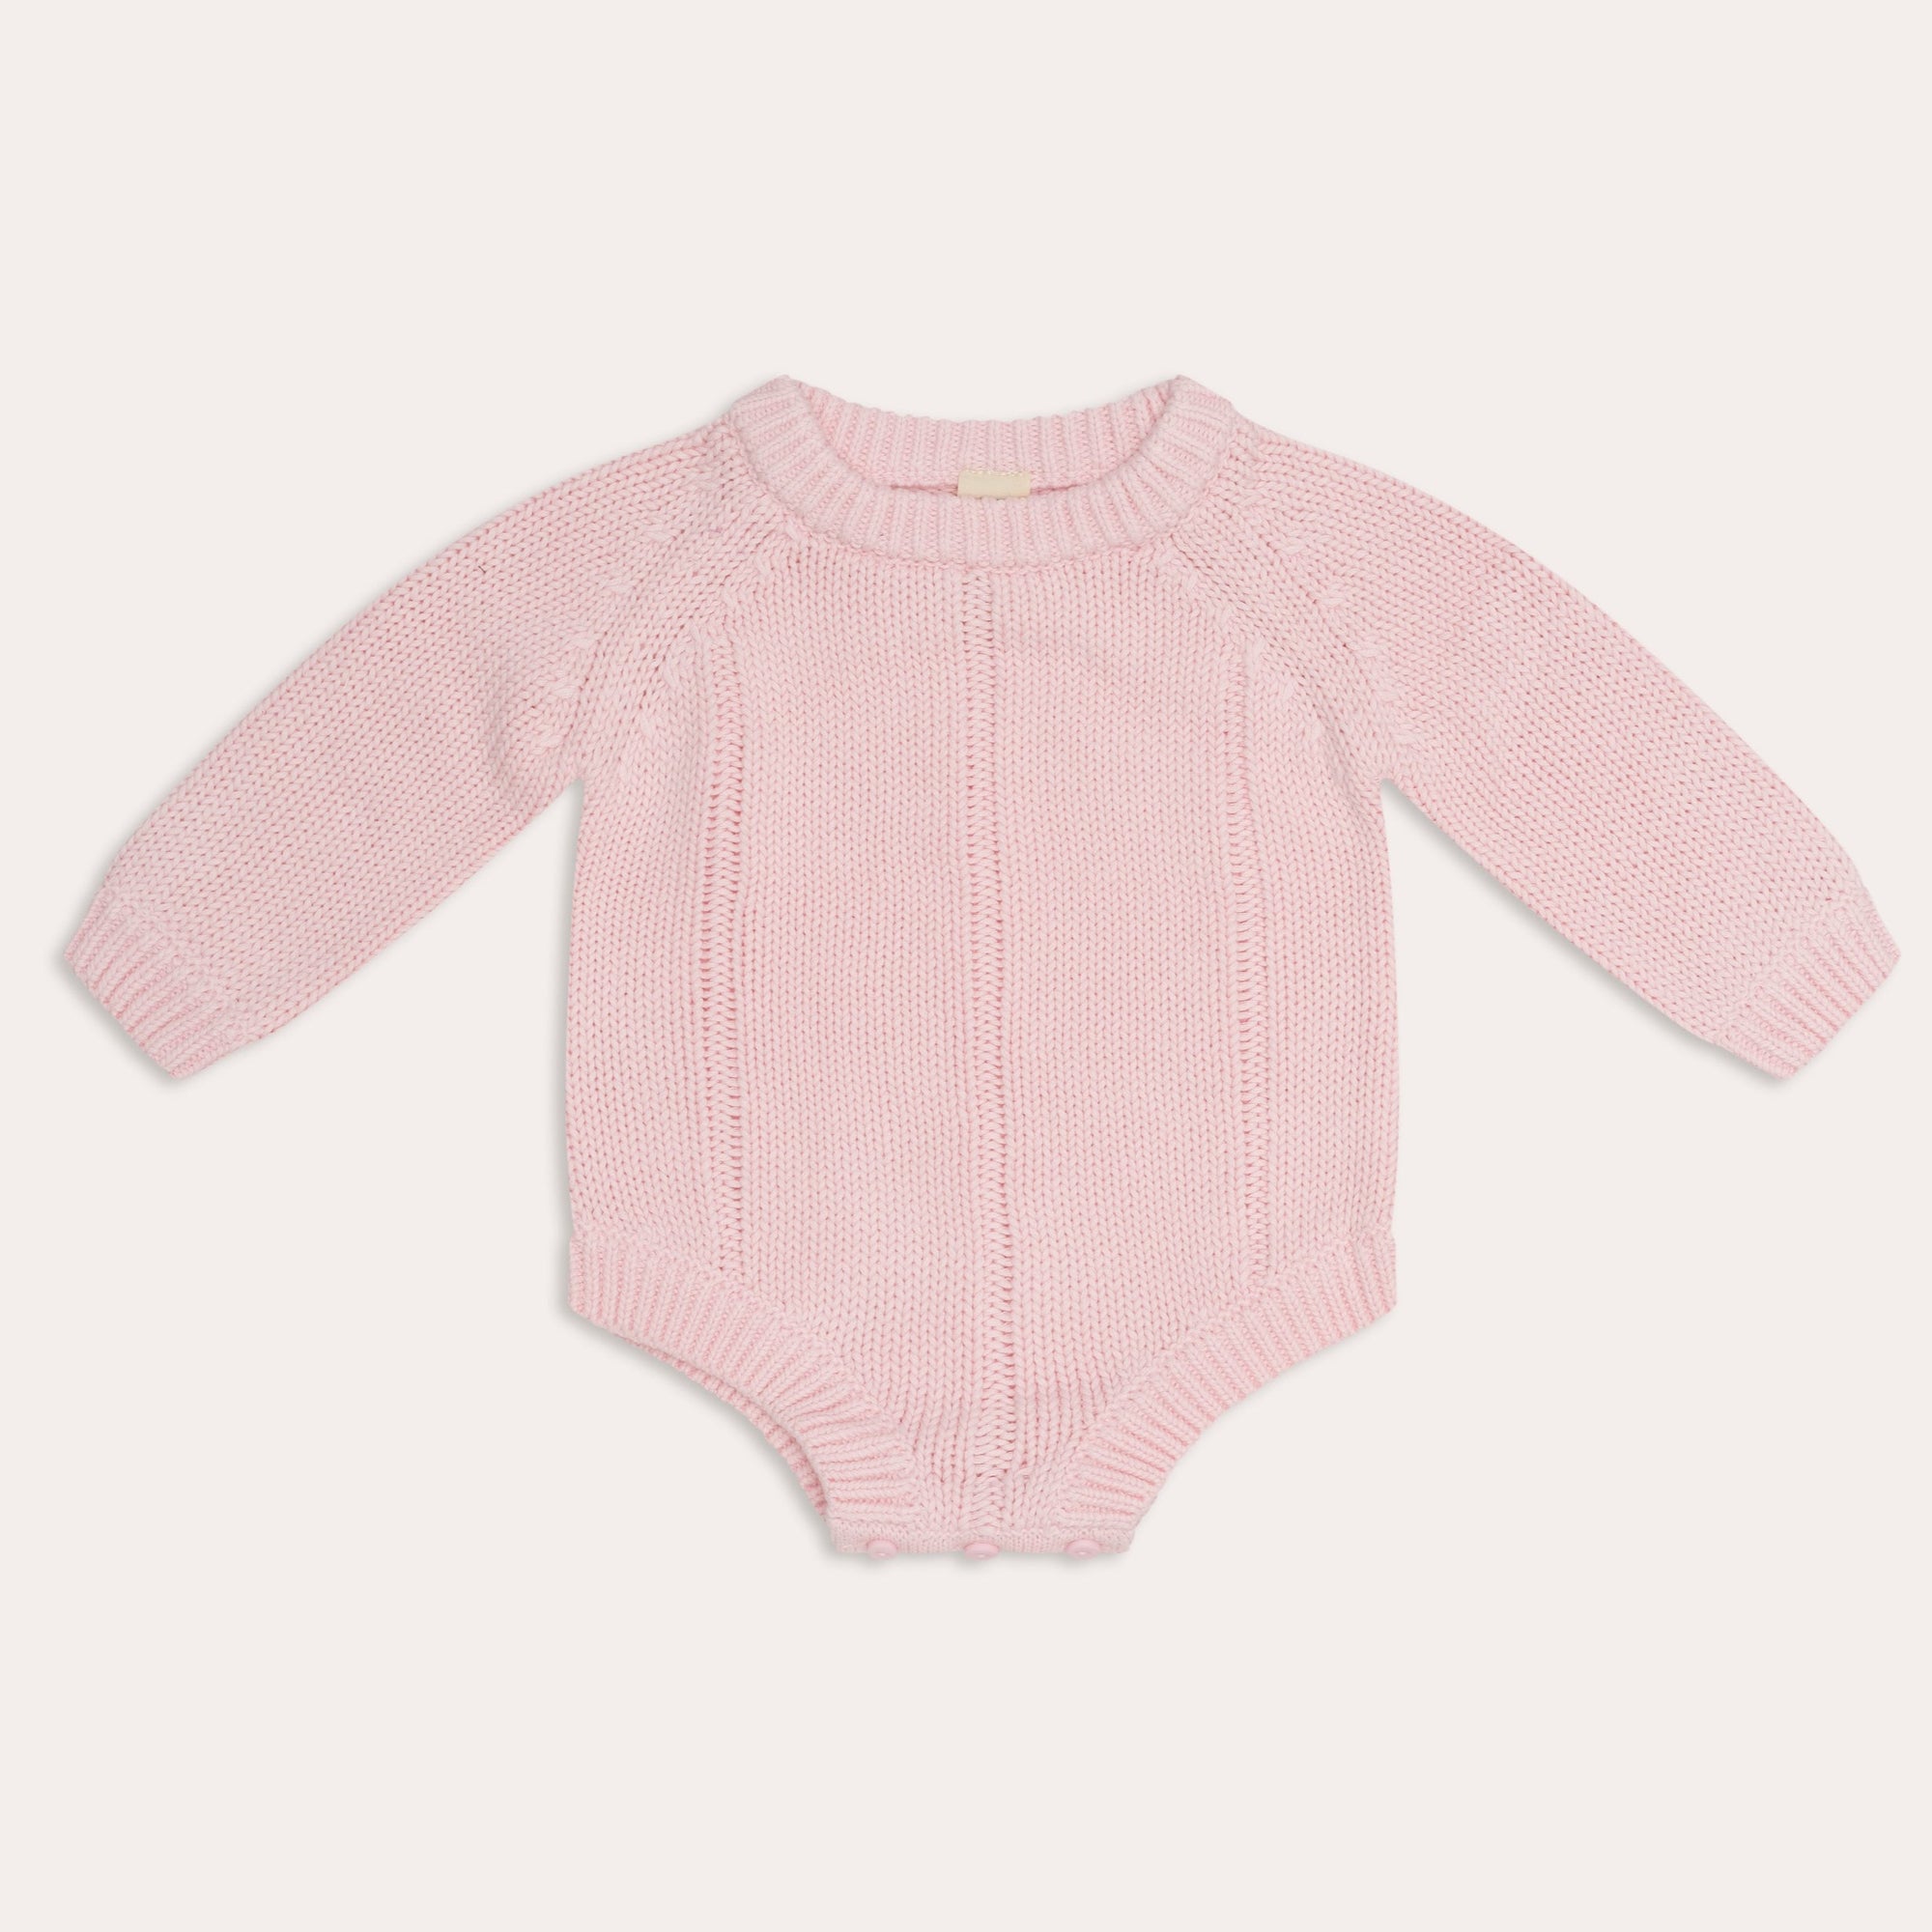 illoura tallow knit romper | pink